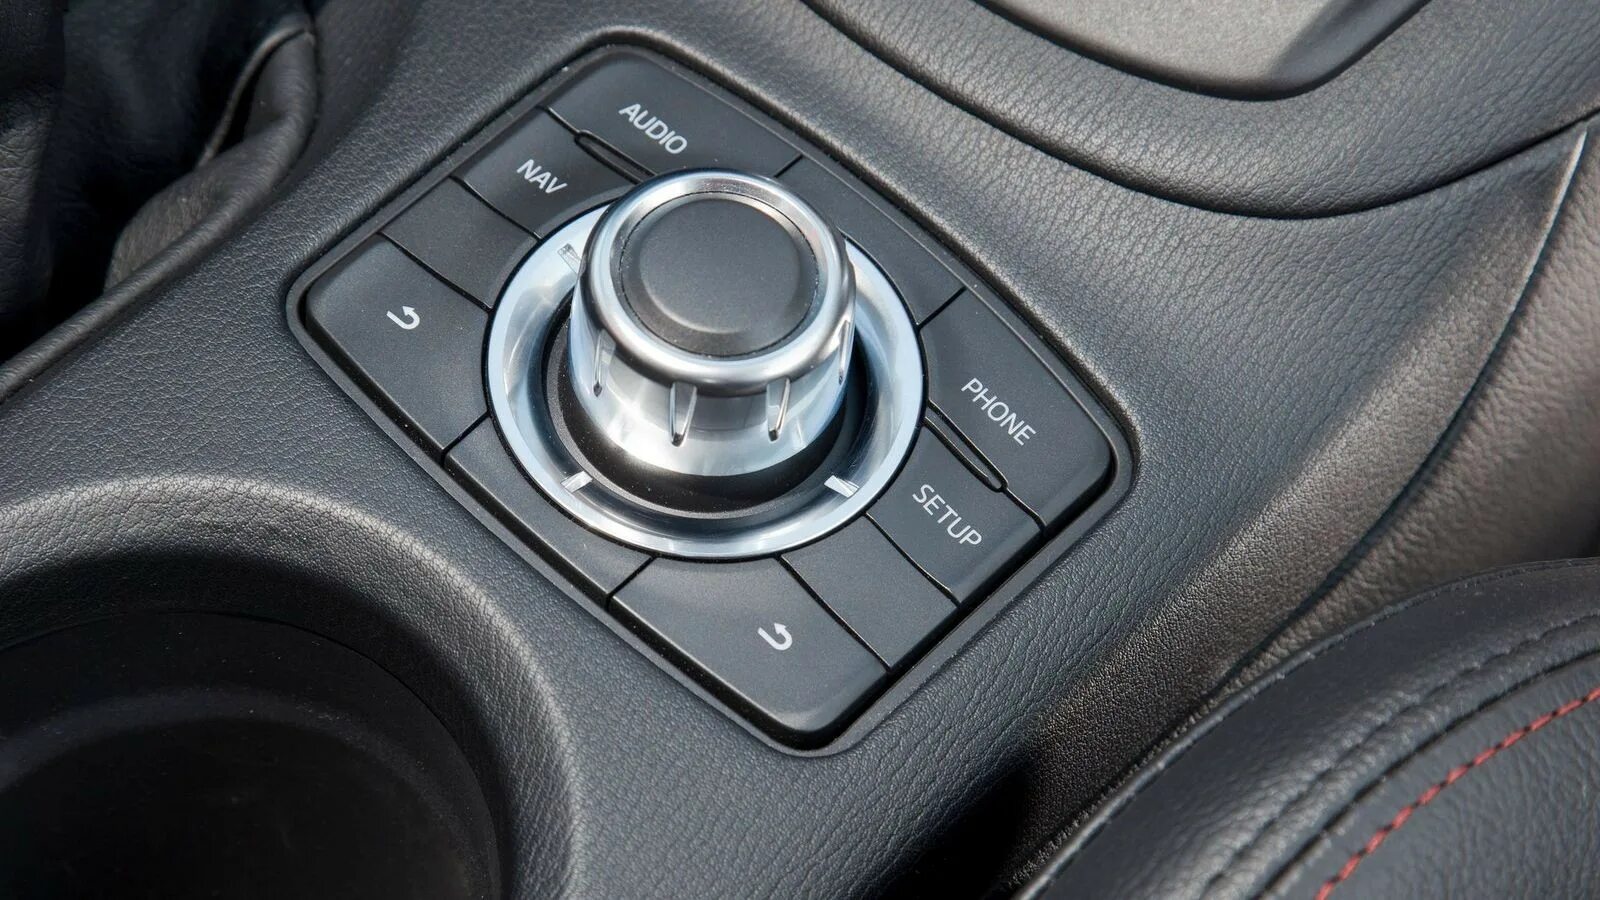 Кнопка полного привода Мазда cx5. Мазда CX-5 2015 полный привод кнопка. Mazda CX-5 Active переключатель привода. Джойстик мультимедиа Mazda CX-5 2012. Управление маздой сх 5